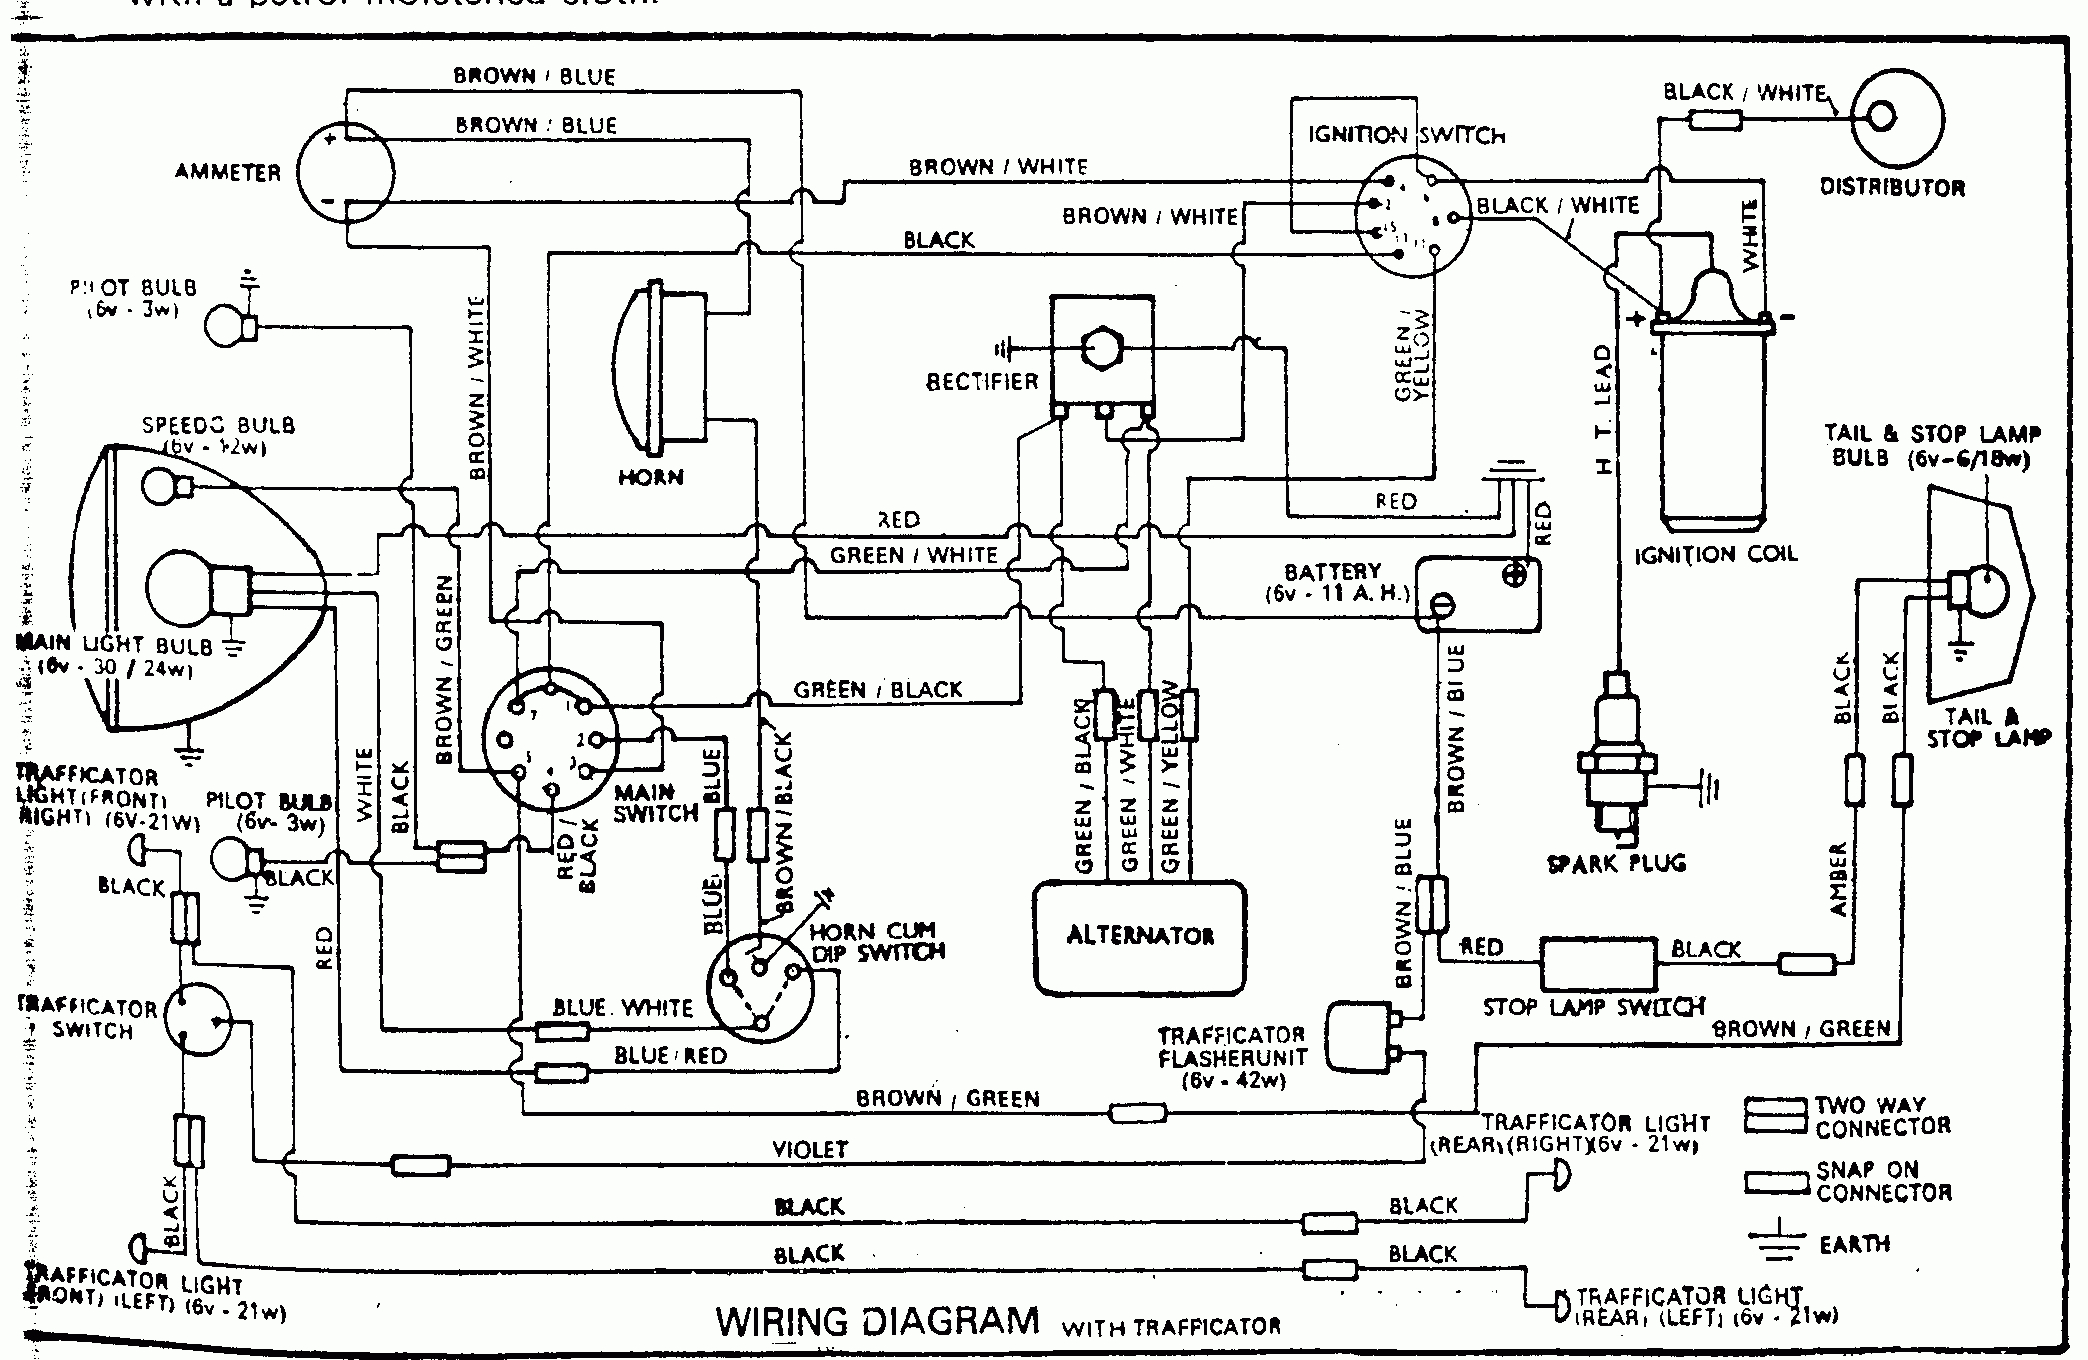 Wiring Diagrams Of Indian Two-Wheelers - Team-Bhp - Simple Motorcycle Wiring Diagram